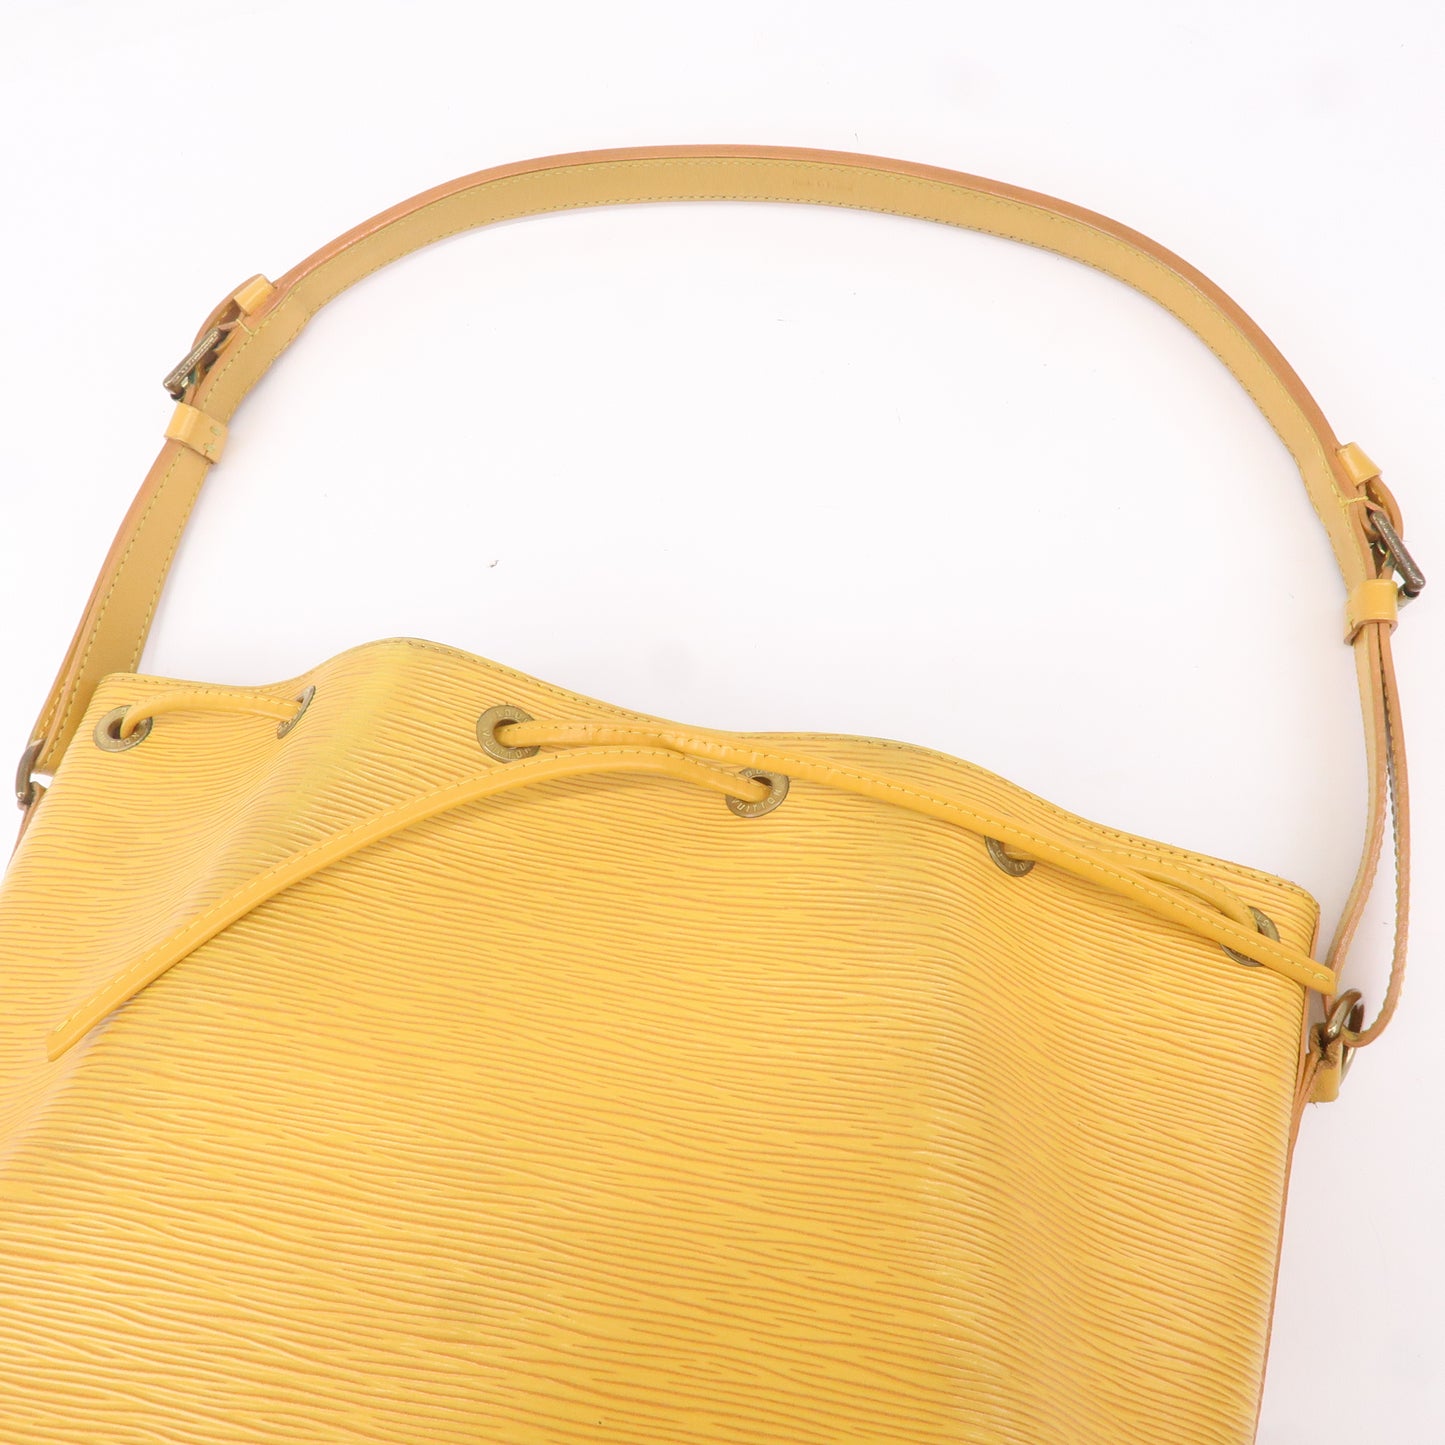 AuthenticLouis Vuitton Epi Petit Noe Shoulder Bag Tassili Yellow M44109